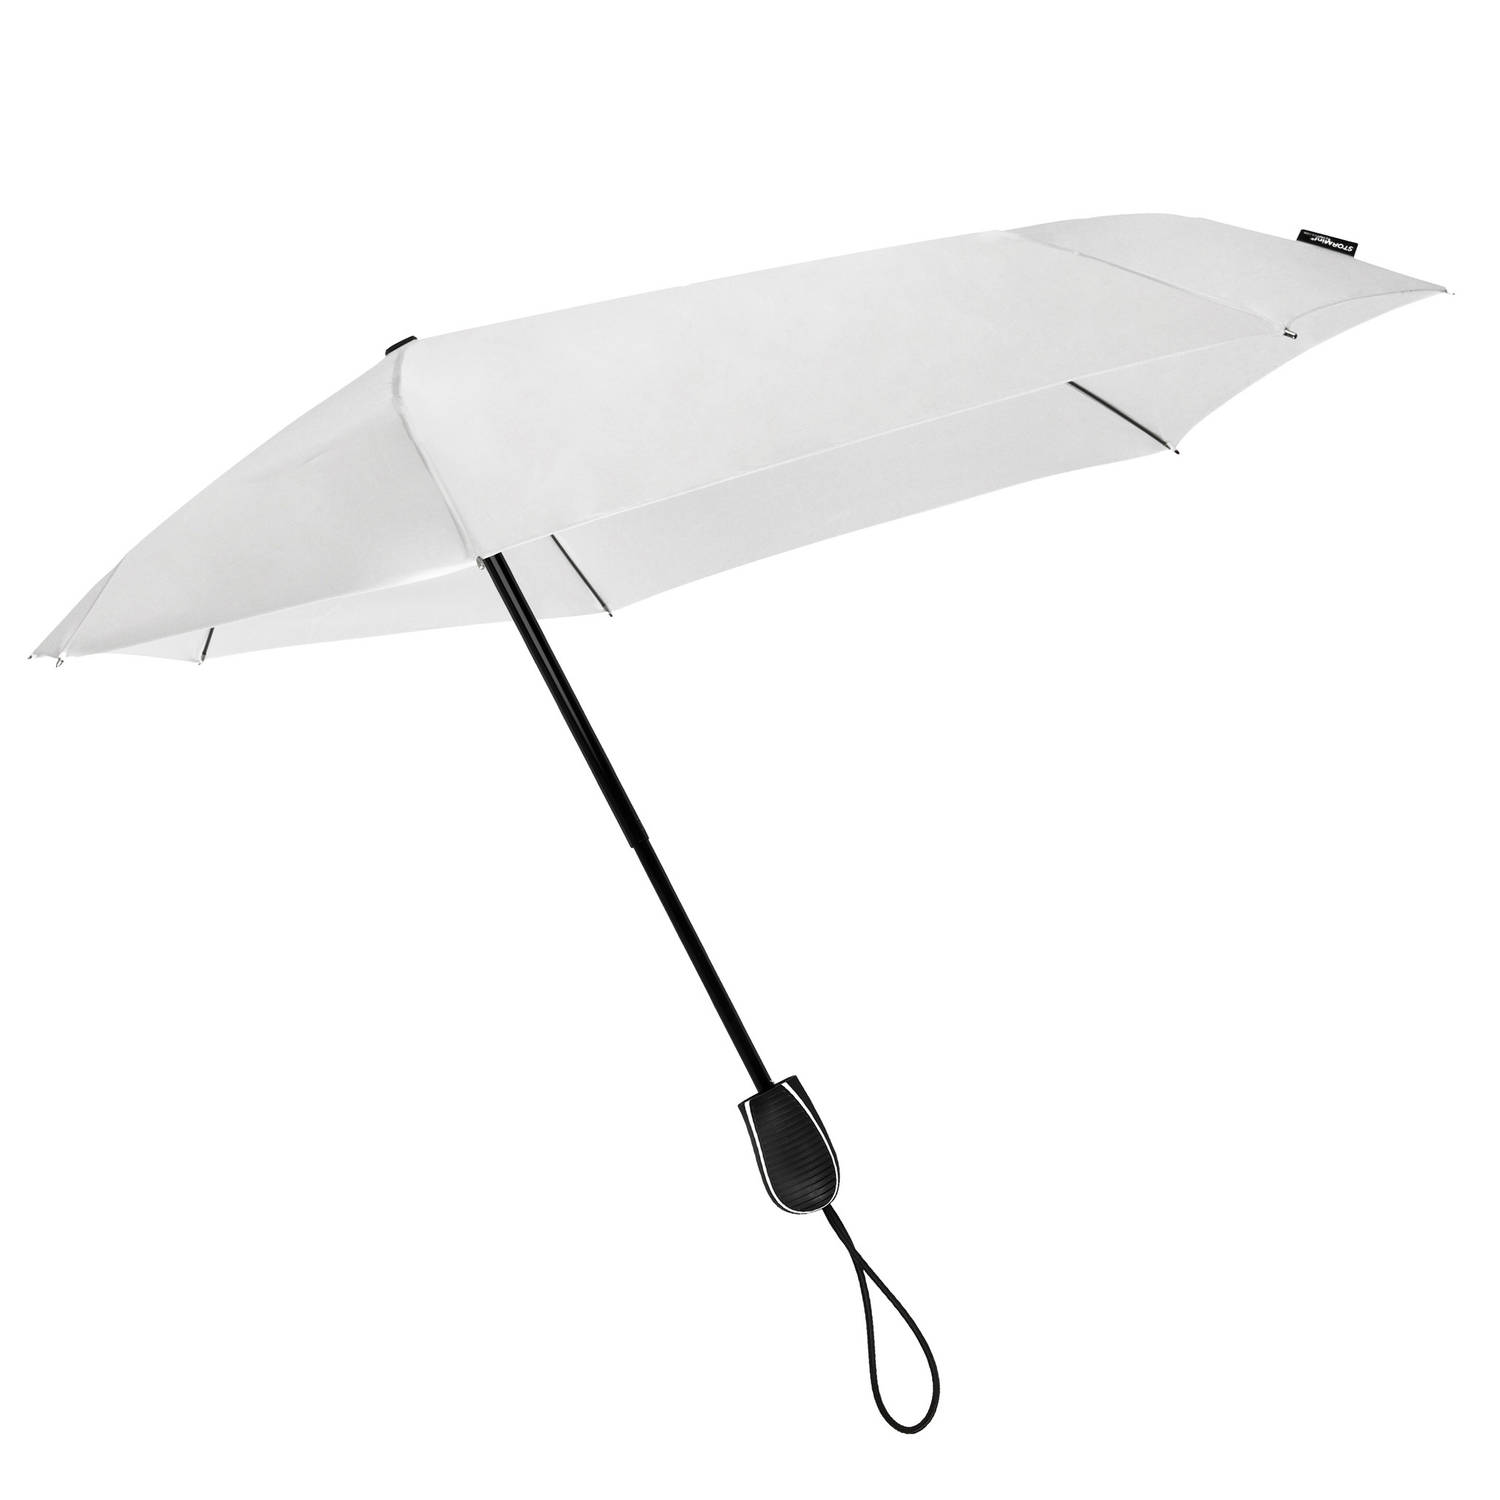 Stormparaplu-80 km/h - Antistorm paraplu - Stormparaplu - STORMini Aerodynamische opvouwbare stormparaplu Wit -